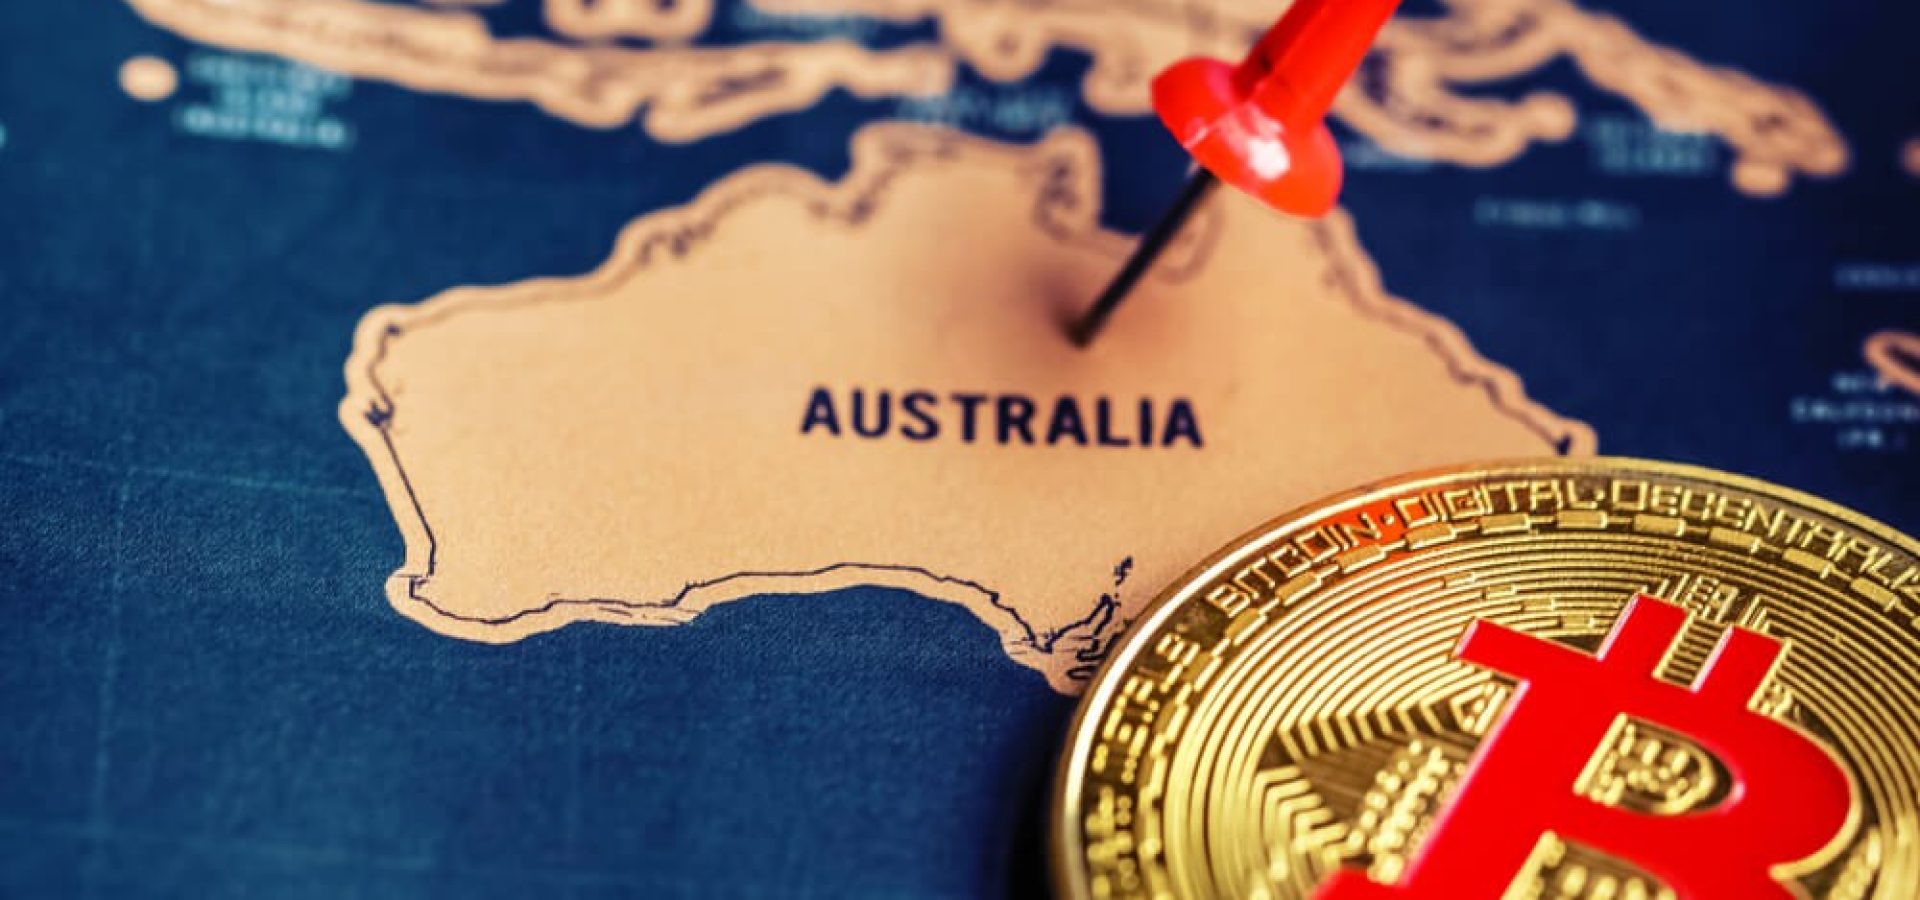 Digital Coins: Bitcoin on Australia map.